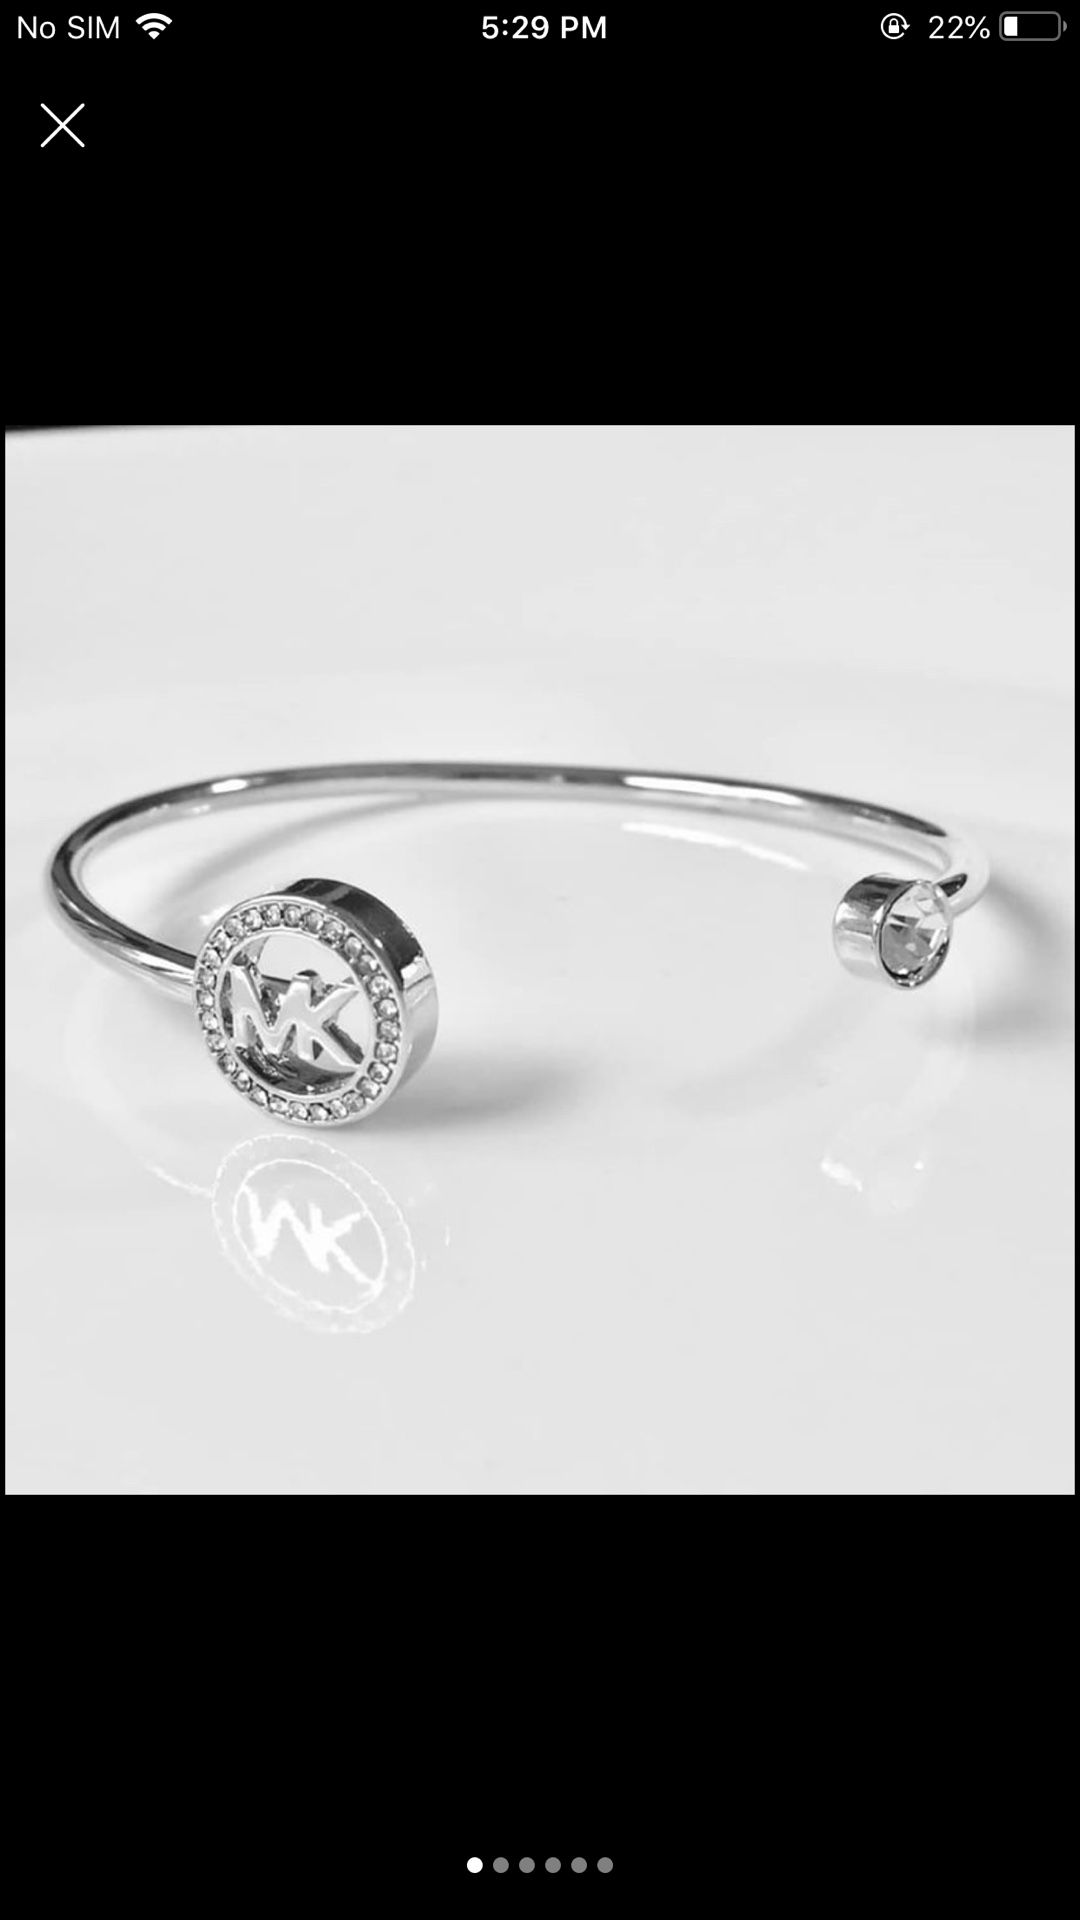 Mk Michael kors open cuff bangle bracelet women’s jewelry accessory